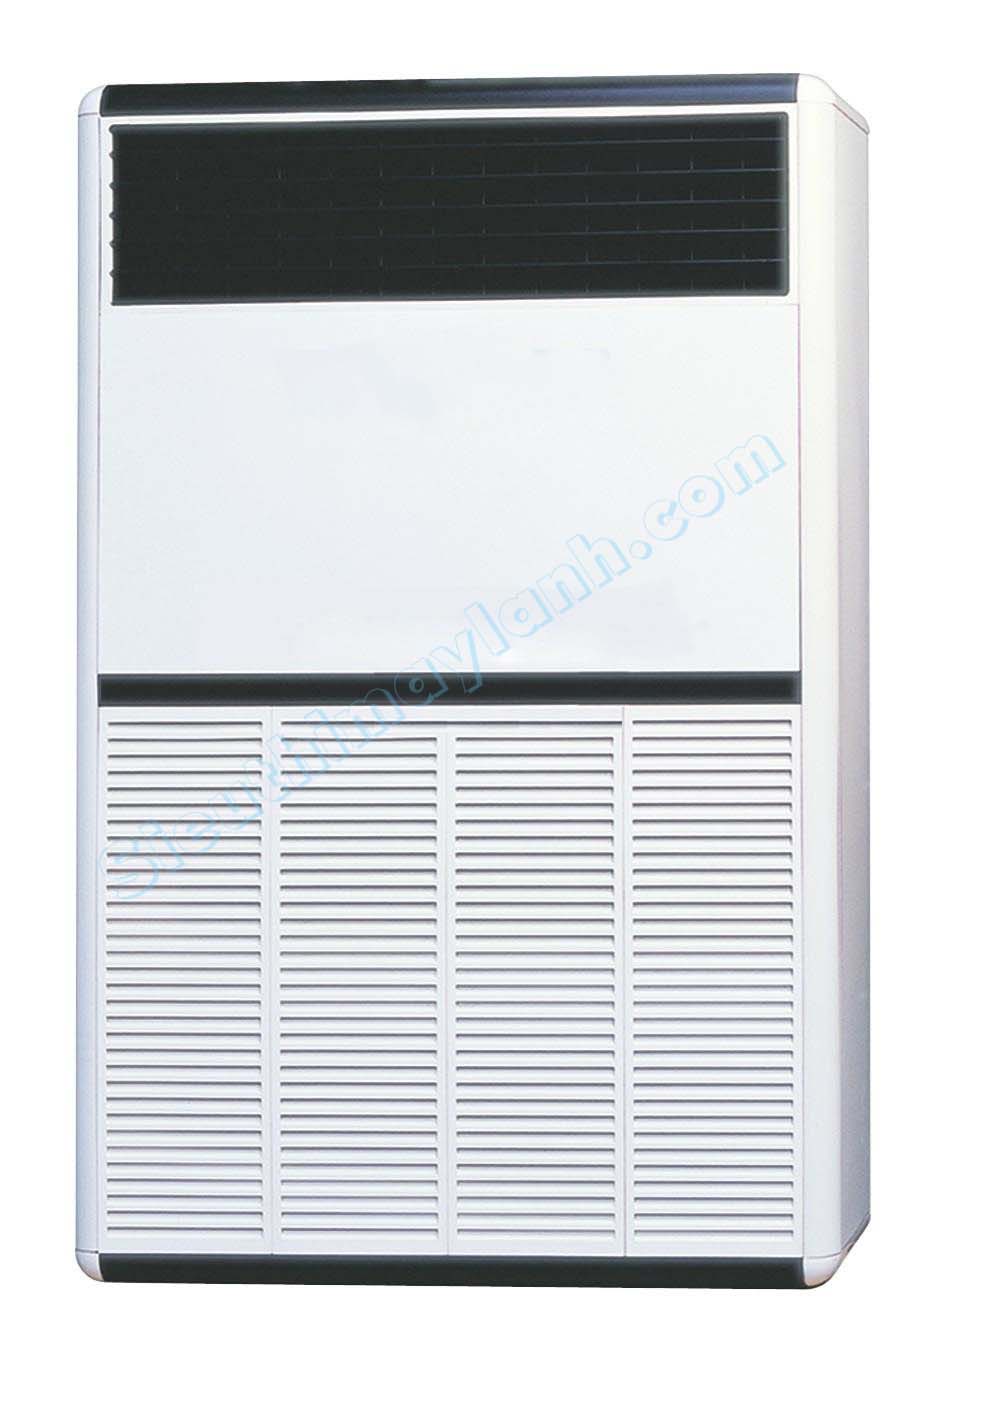 Máy lạnh tủ đứng LG VP-C1008FA0 10.0 HP (10 Ngựa)